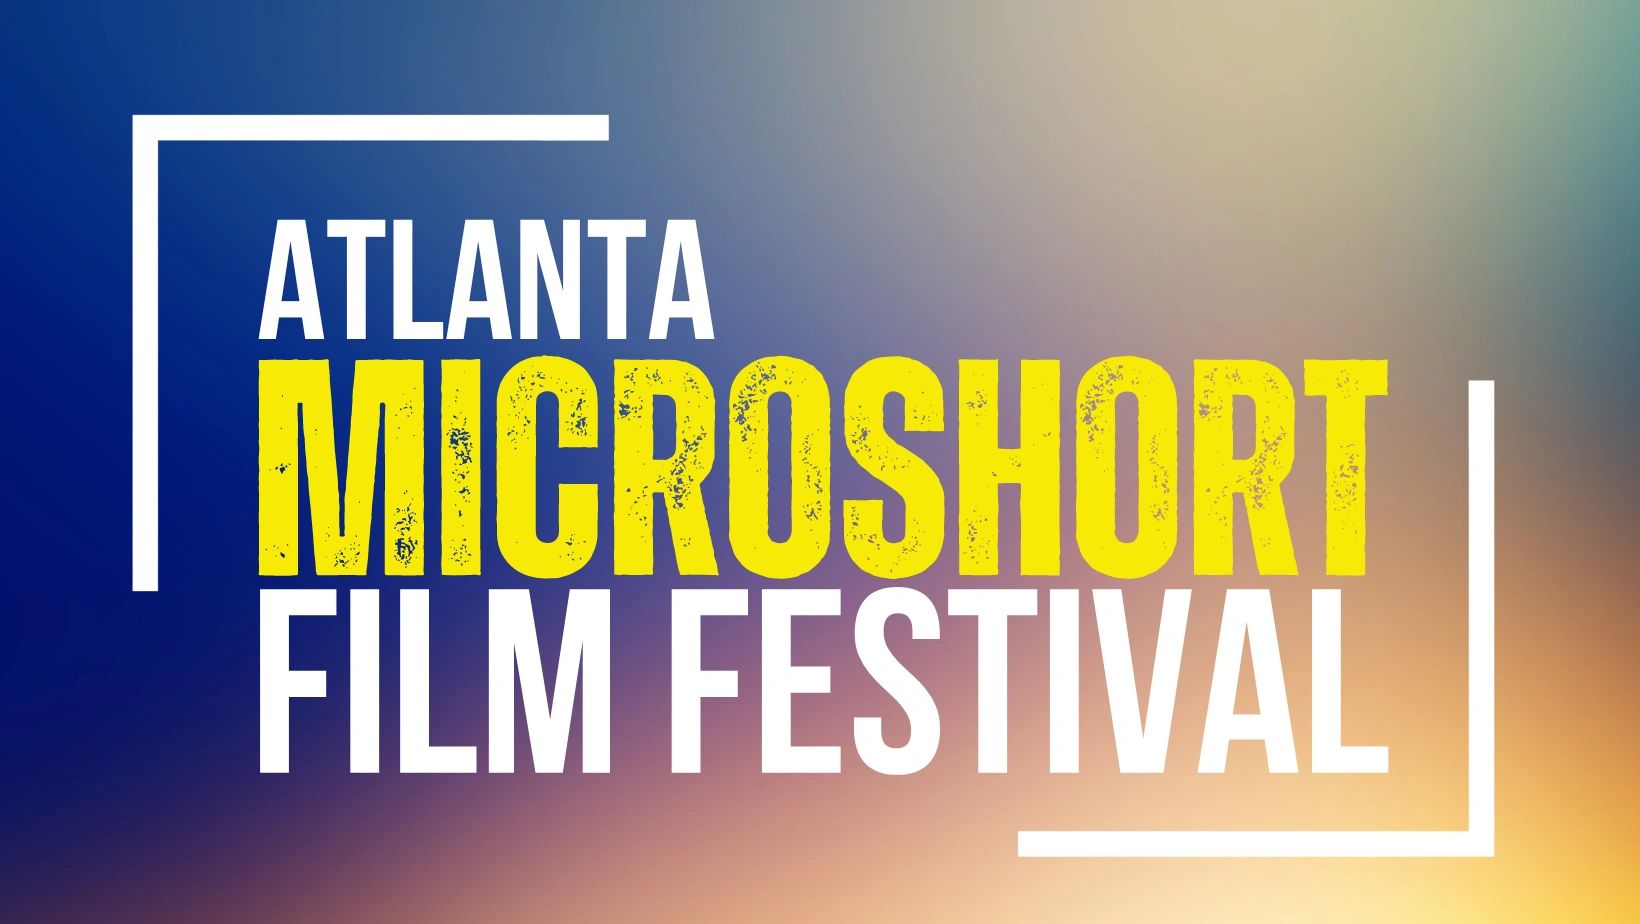 (c) Microshortfilmfest.com